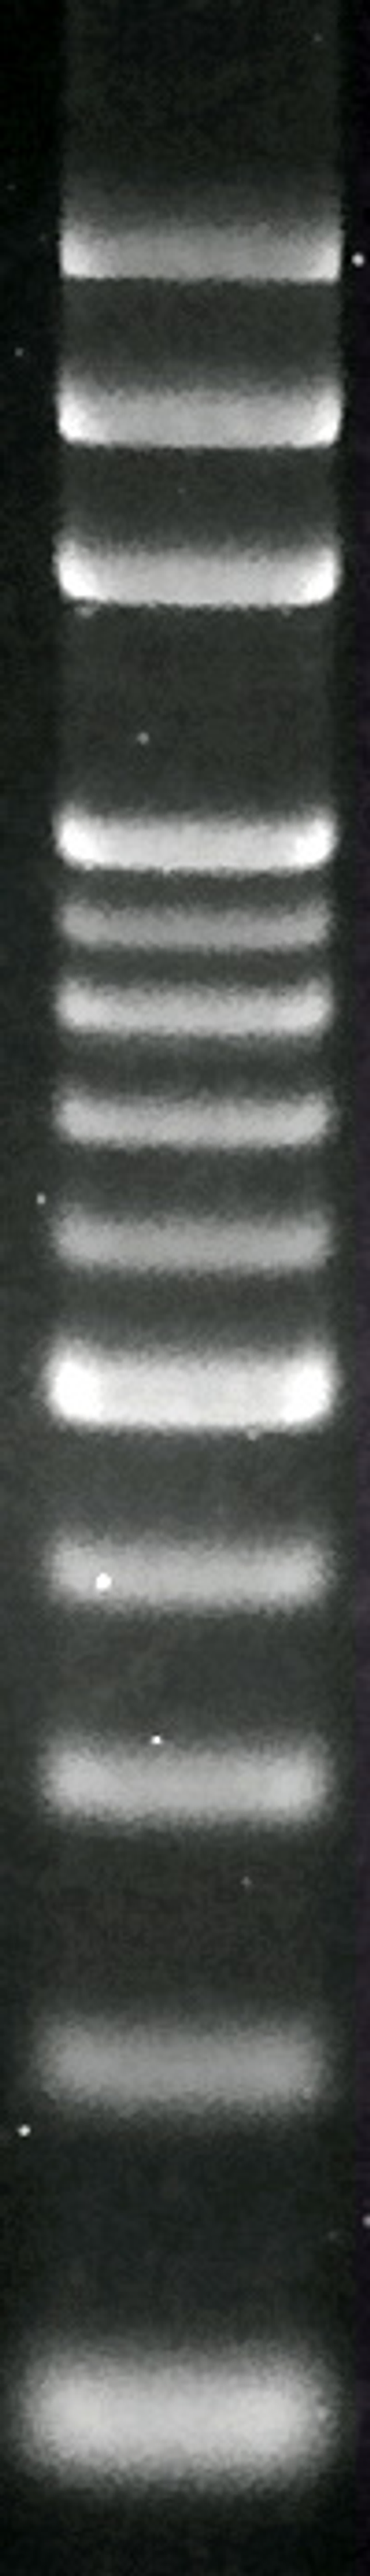 100 bp DNA Ladder Marker